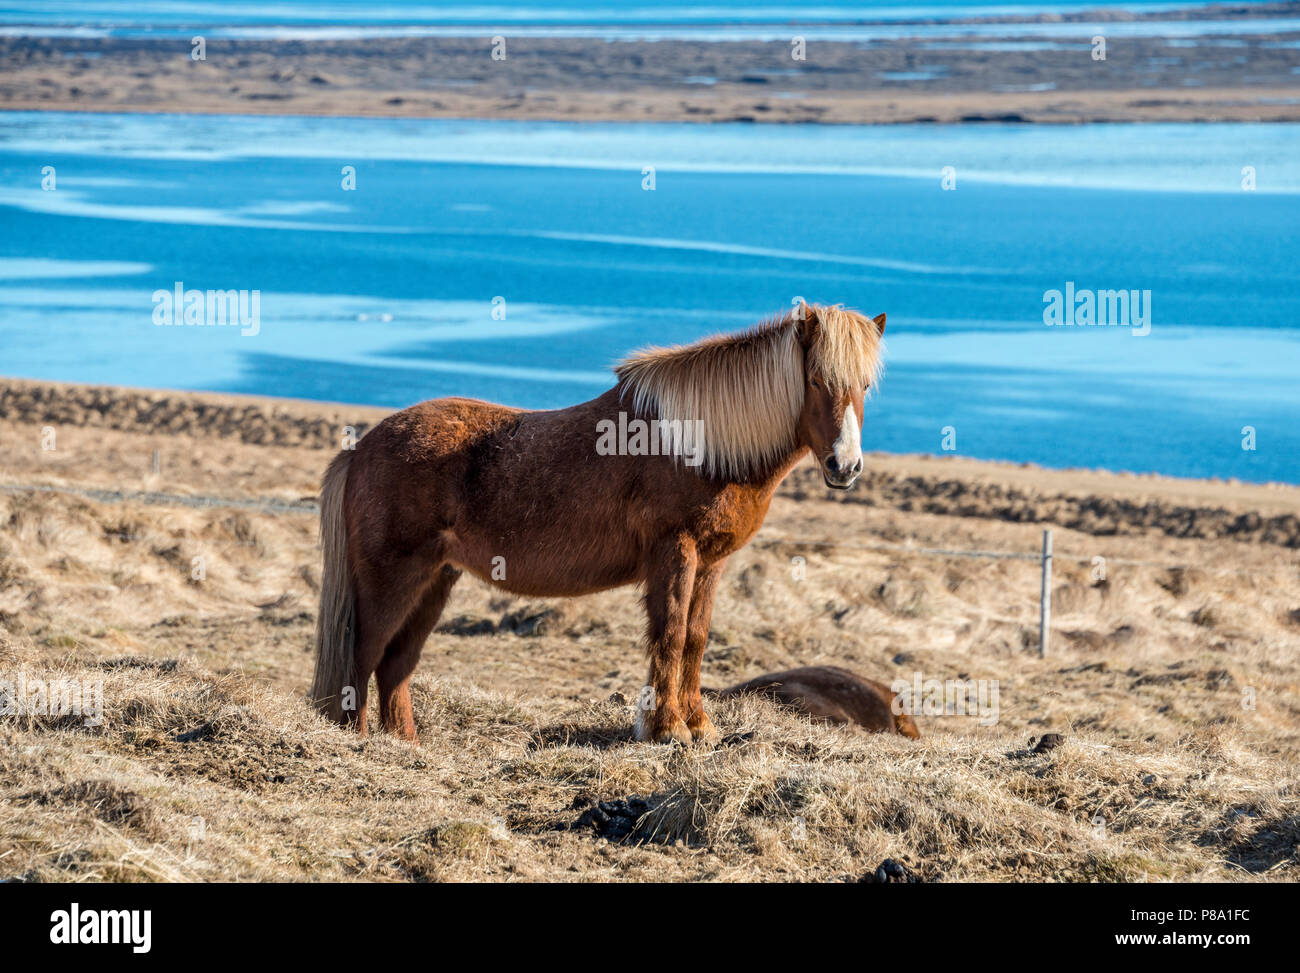 Isländische Pferd (Equus przewalskii f. caballus) durch das Meer, die Halbinsel Vatnsnes, Norðurland djupivogur, North Island, Island Stockfoto